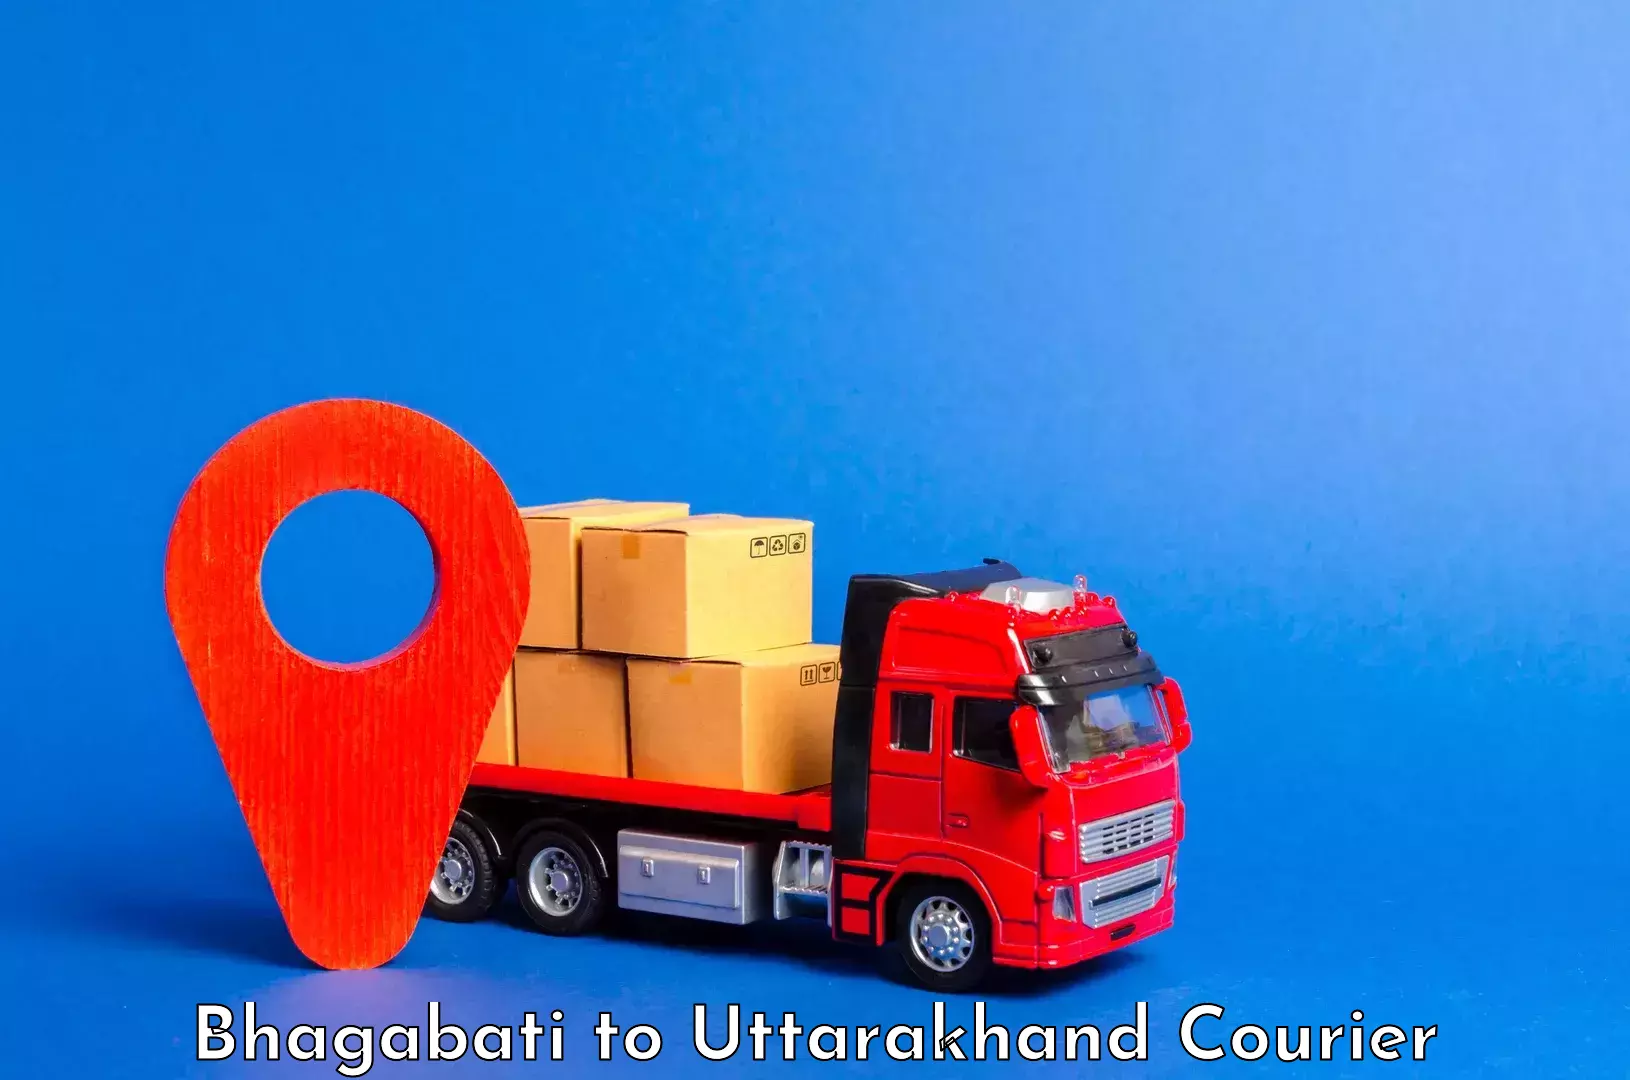 Luggage delivery app Bhagabati to Uttarakhand